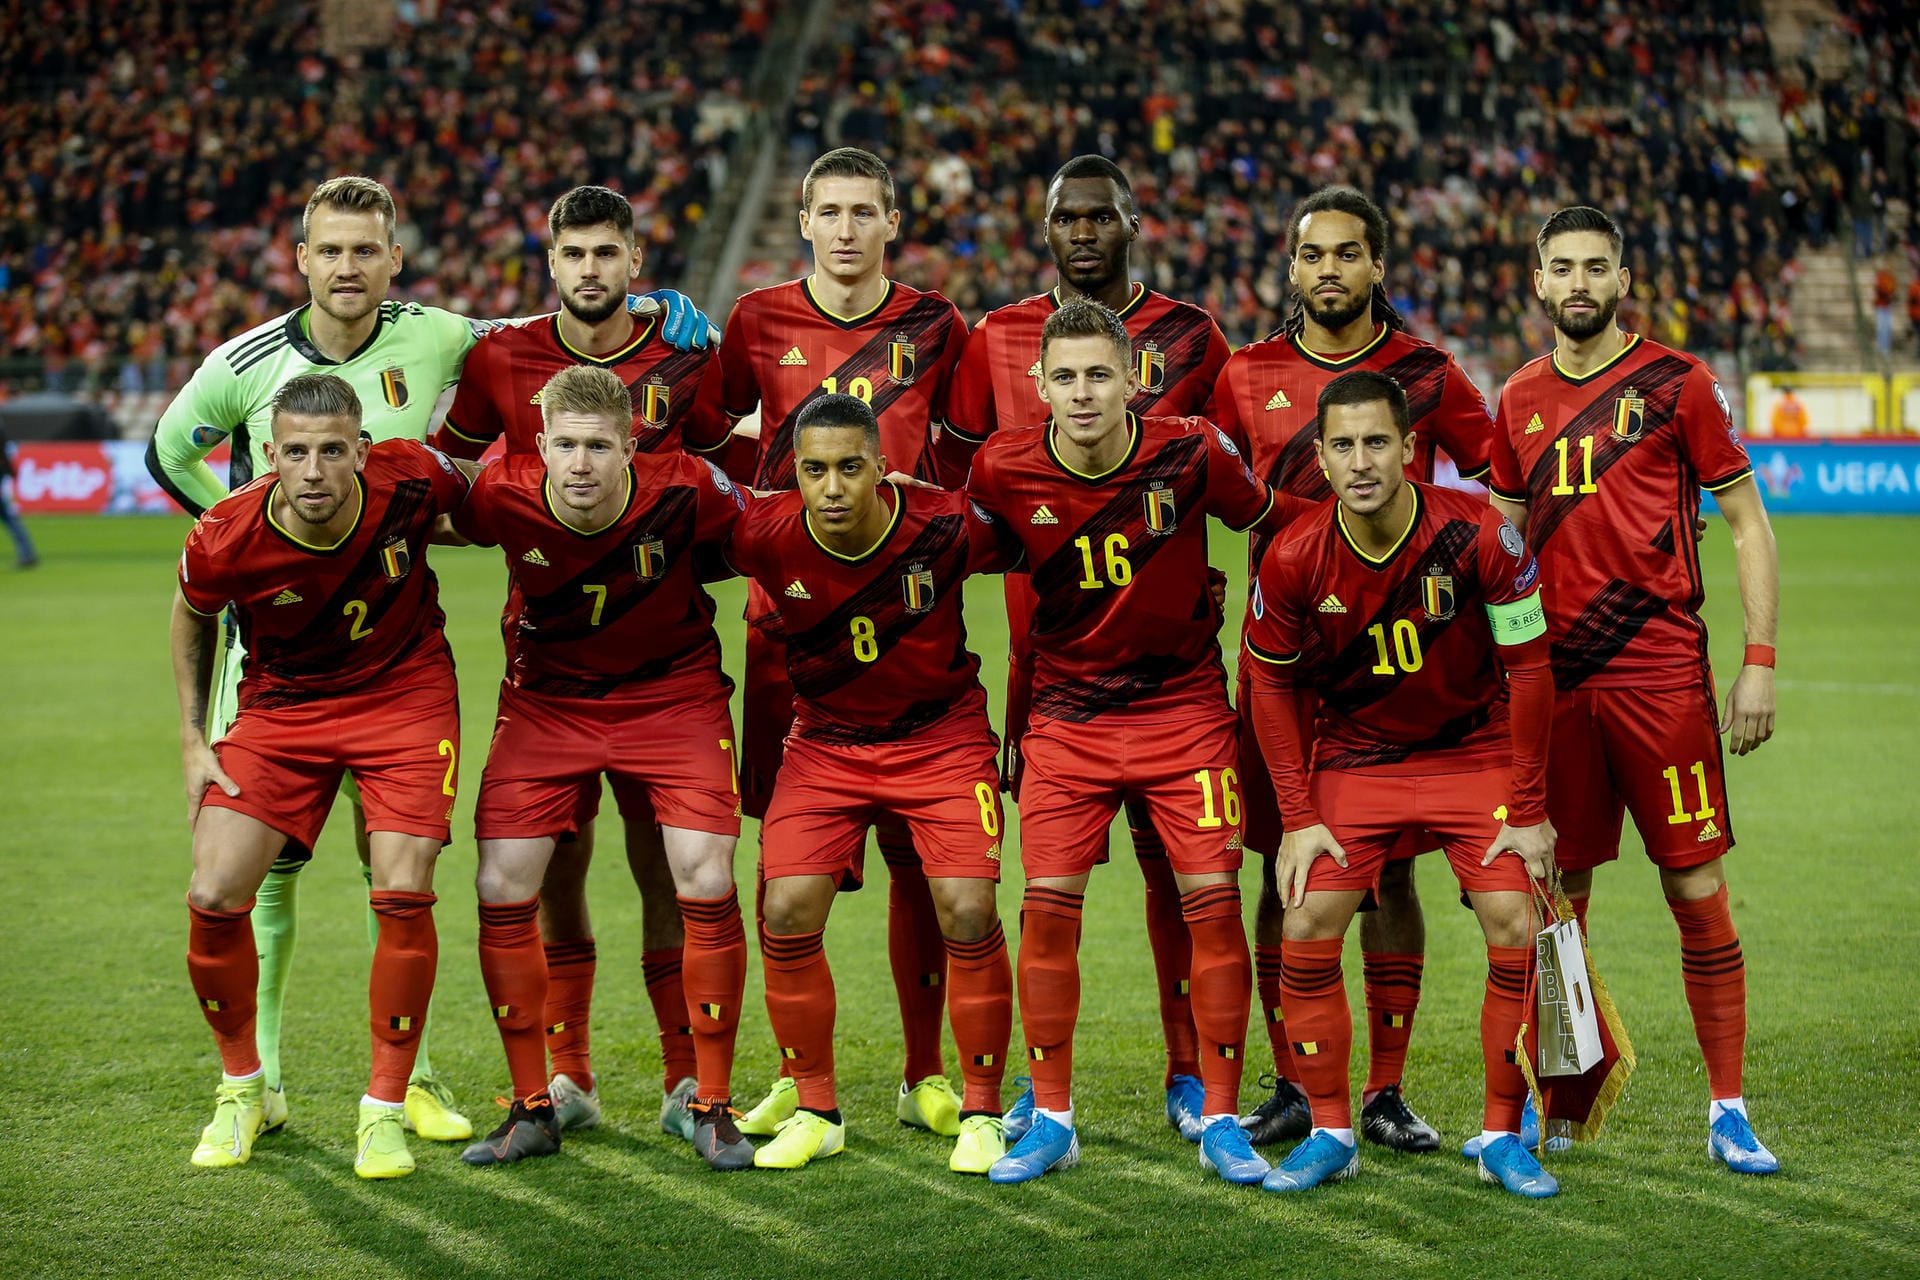 Die Belgier haben eine perfekte Qualifikation gespielt – und zählen 2020 sicher zu den EM-Mitfavoriten: Zehn Spiele, zehn Siege, 40:3 Tore – die "Roten Teufel" sind durch ihre Gruppe gepflügt.